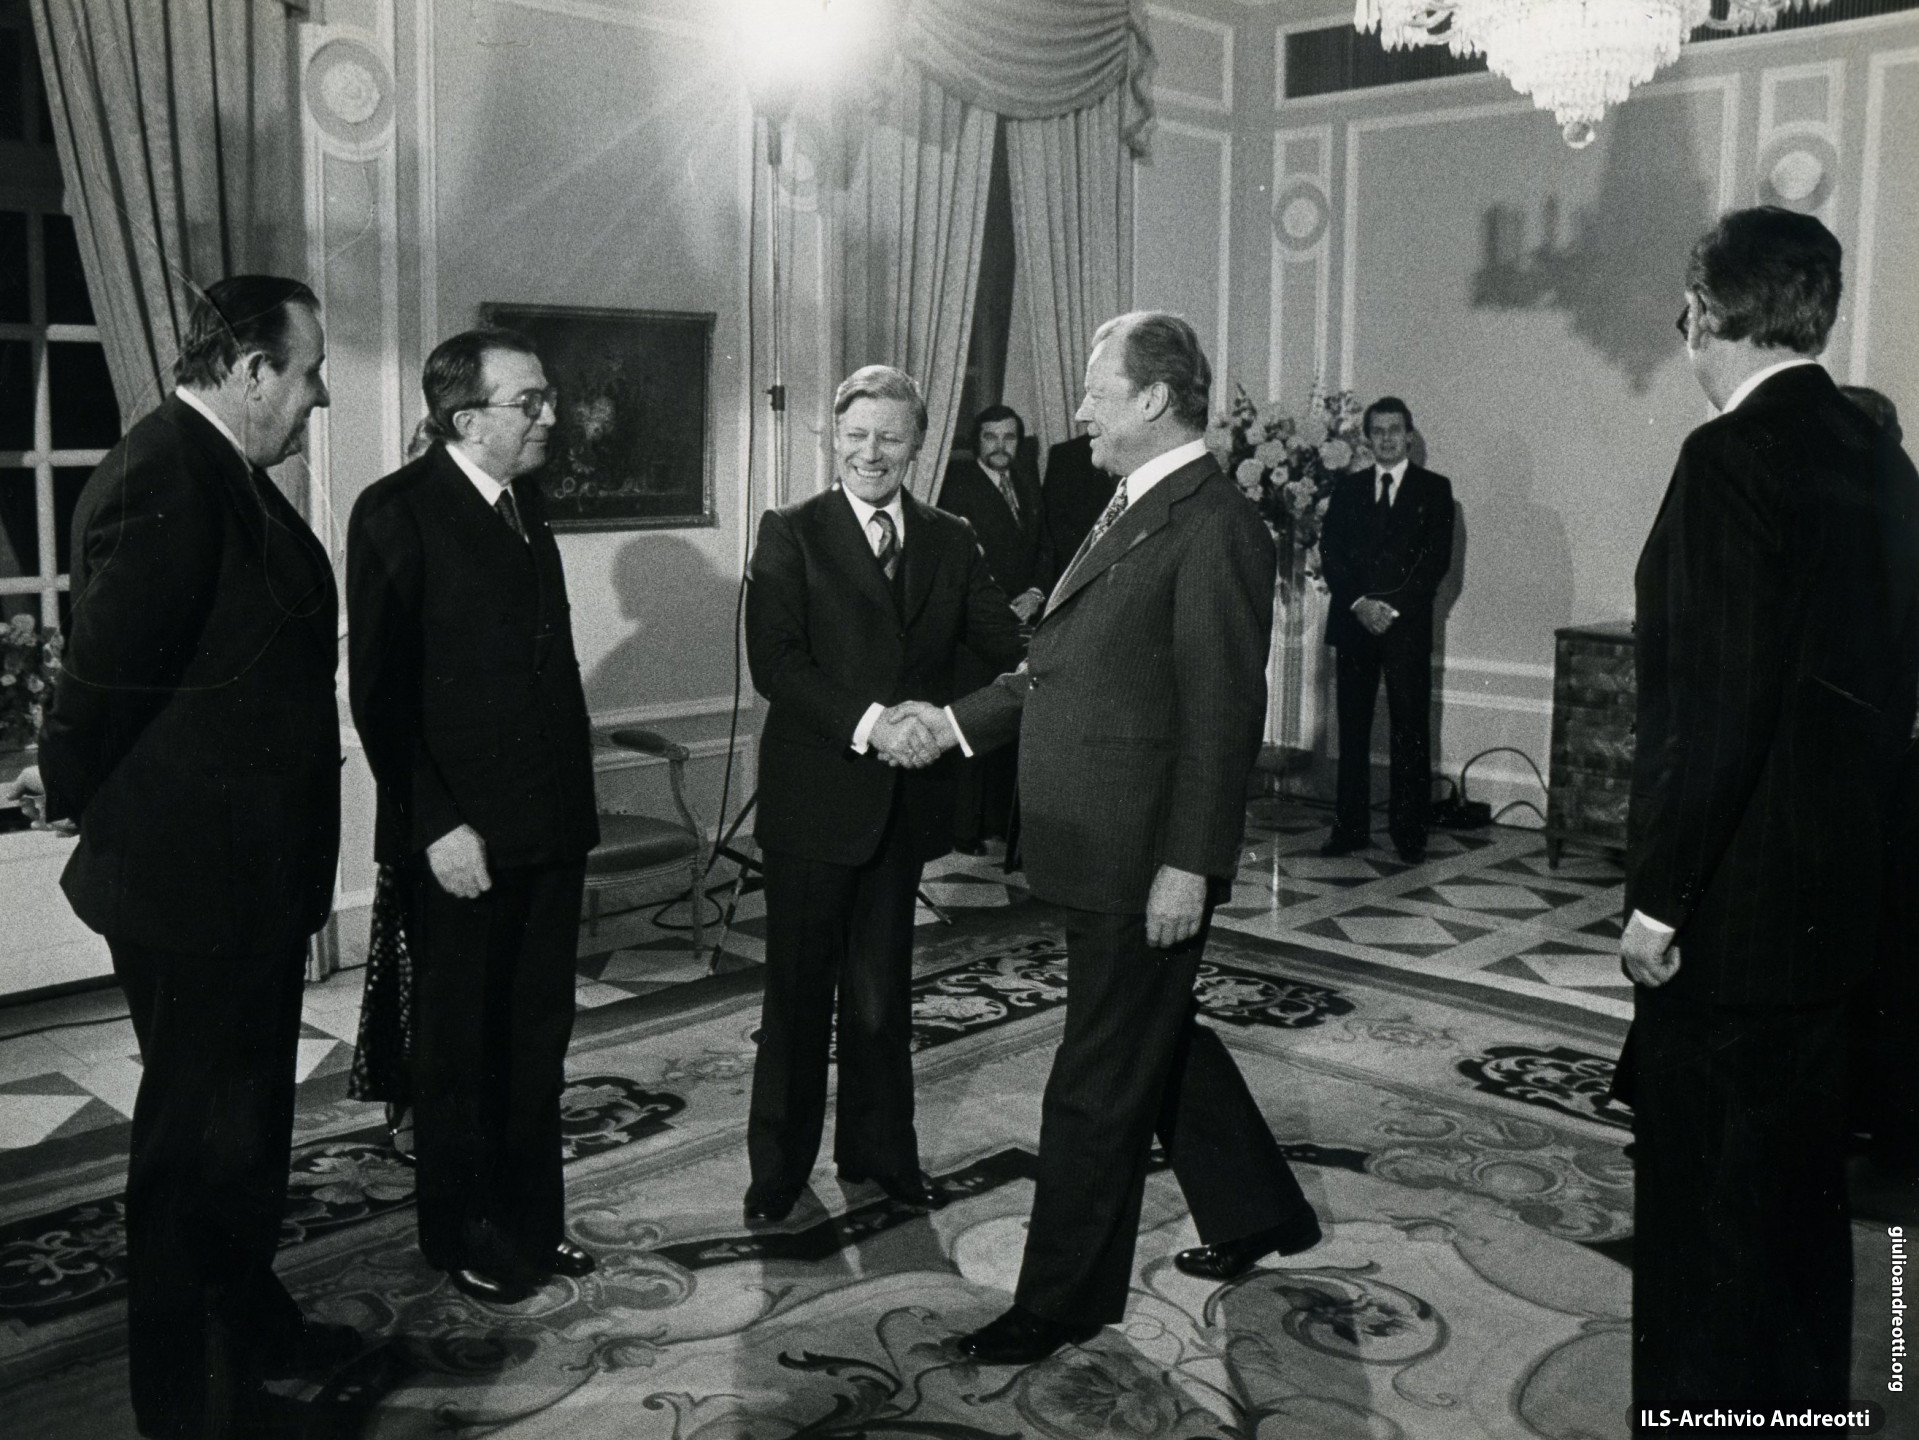 Germania,1977. Incontro tra il Ministro degli Esteri Hans-Dietrich Gensher, Giulio Andreotti, il Cancelliere Helmut Schmidt e l'ex Cancelliere Willy Brandt.